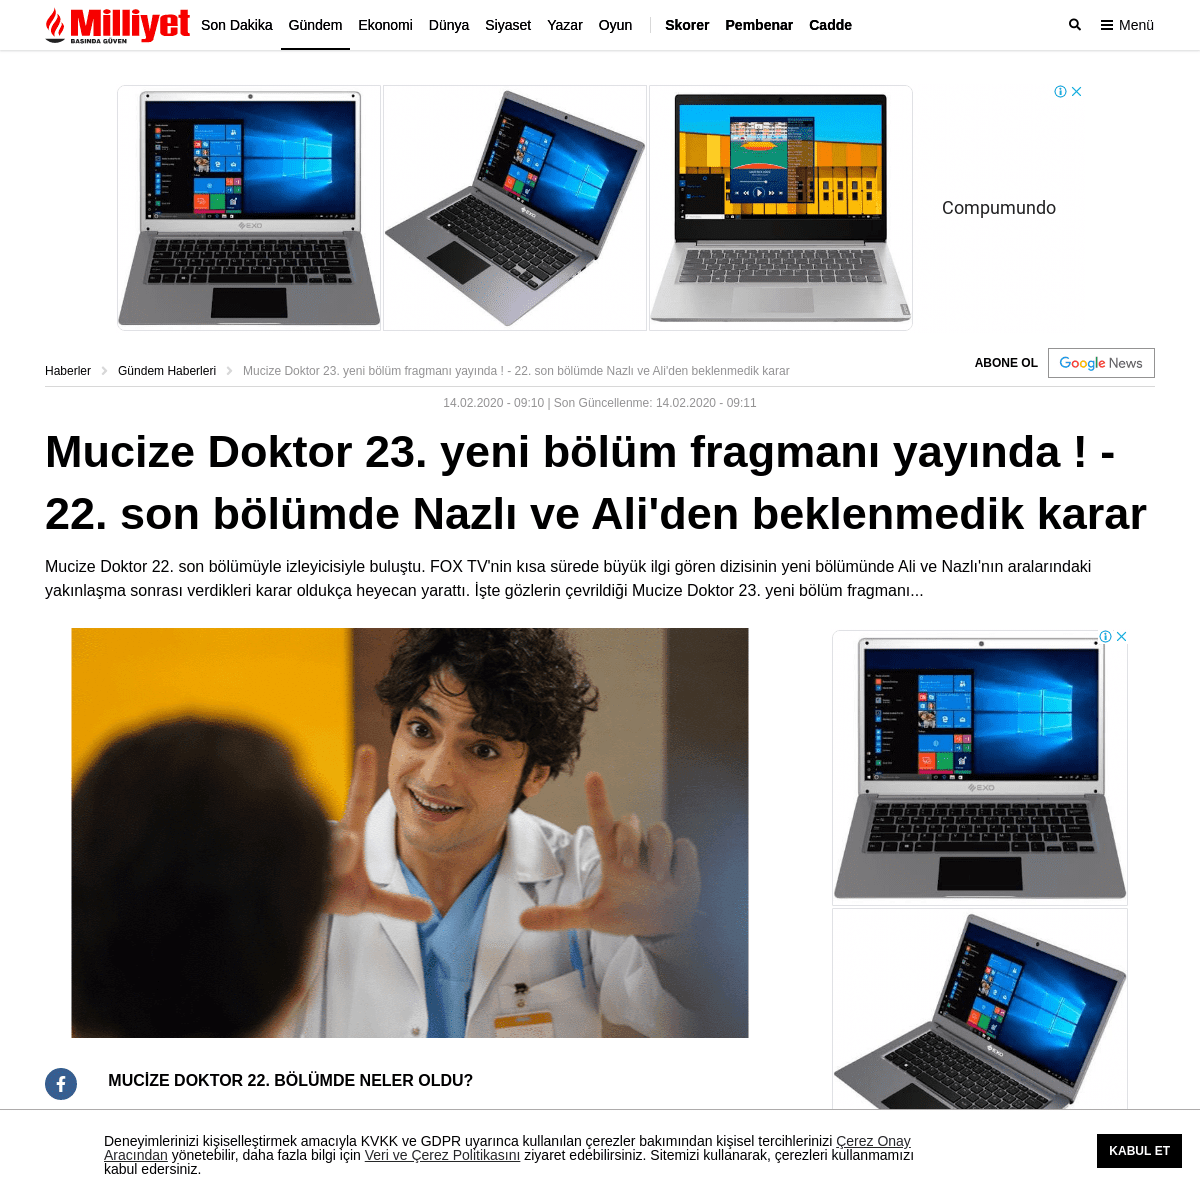 A complete backup of www.milliyet.com.tr/gundem/mucize-doktor-23-yeni-bolum-fragmani-yayinda-22-son-bolumde-nazli-ve-aliden-bekl